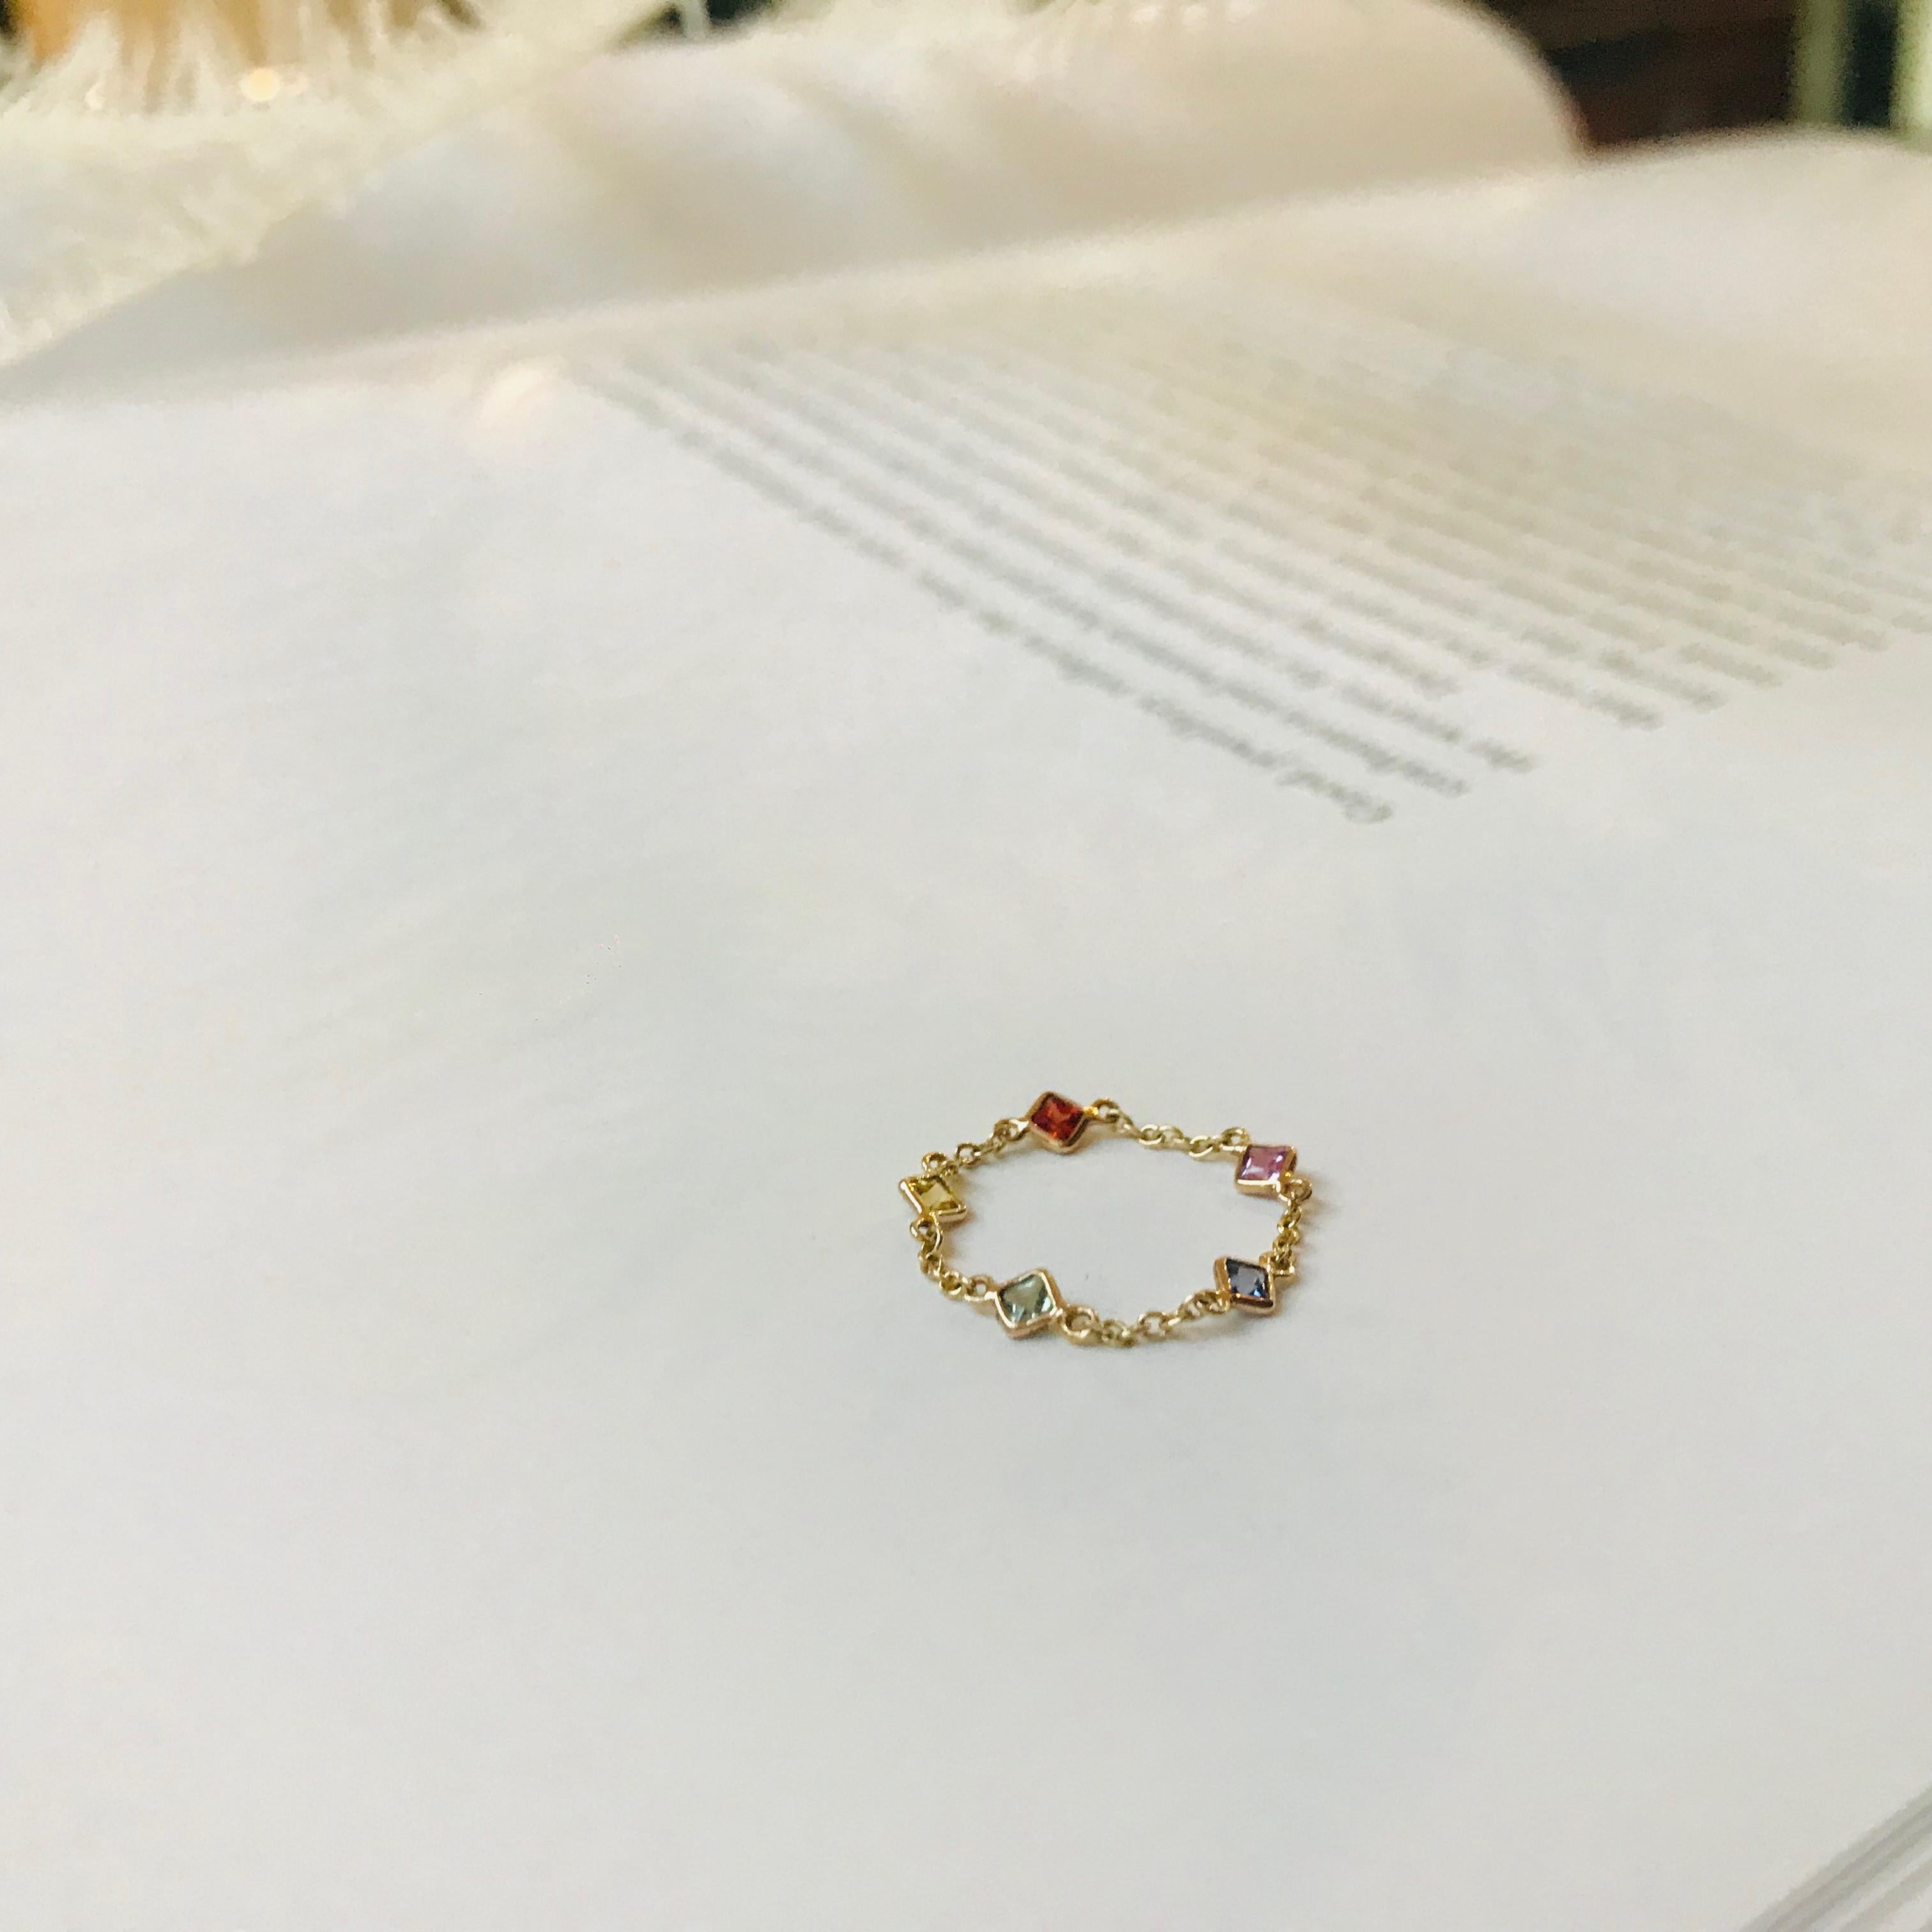 Diese mehrfarbige Saphirkette verleiht Ihrer Ringkollektion einen jugendlichen Touch. 

Jeder Edelstein wird mit einem scharfen Auge für die Farbe handverlesen, um die beste Qualität zu gewährleisten. Fassung in 14k Gold. Dieser Ring wird von